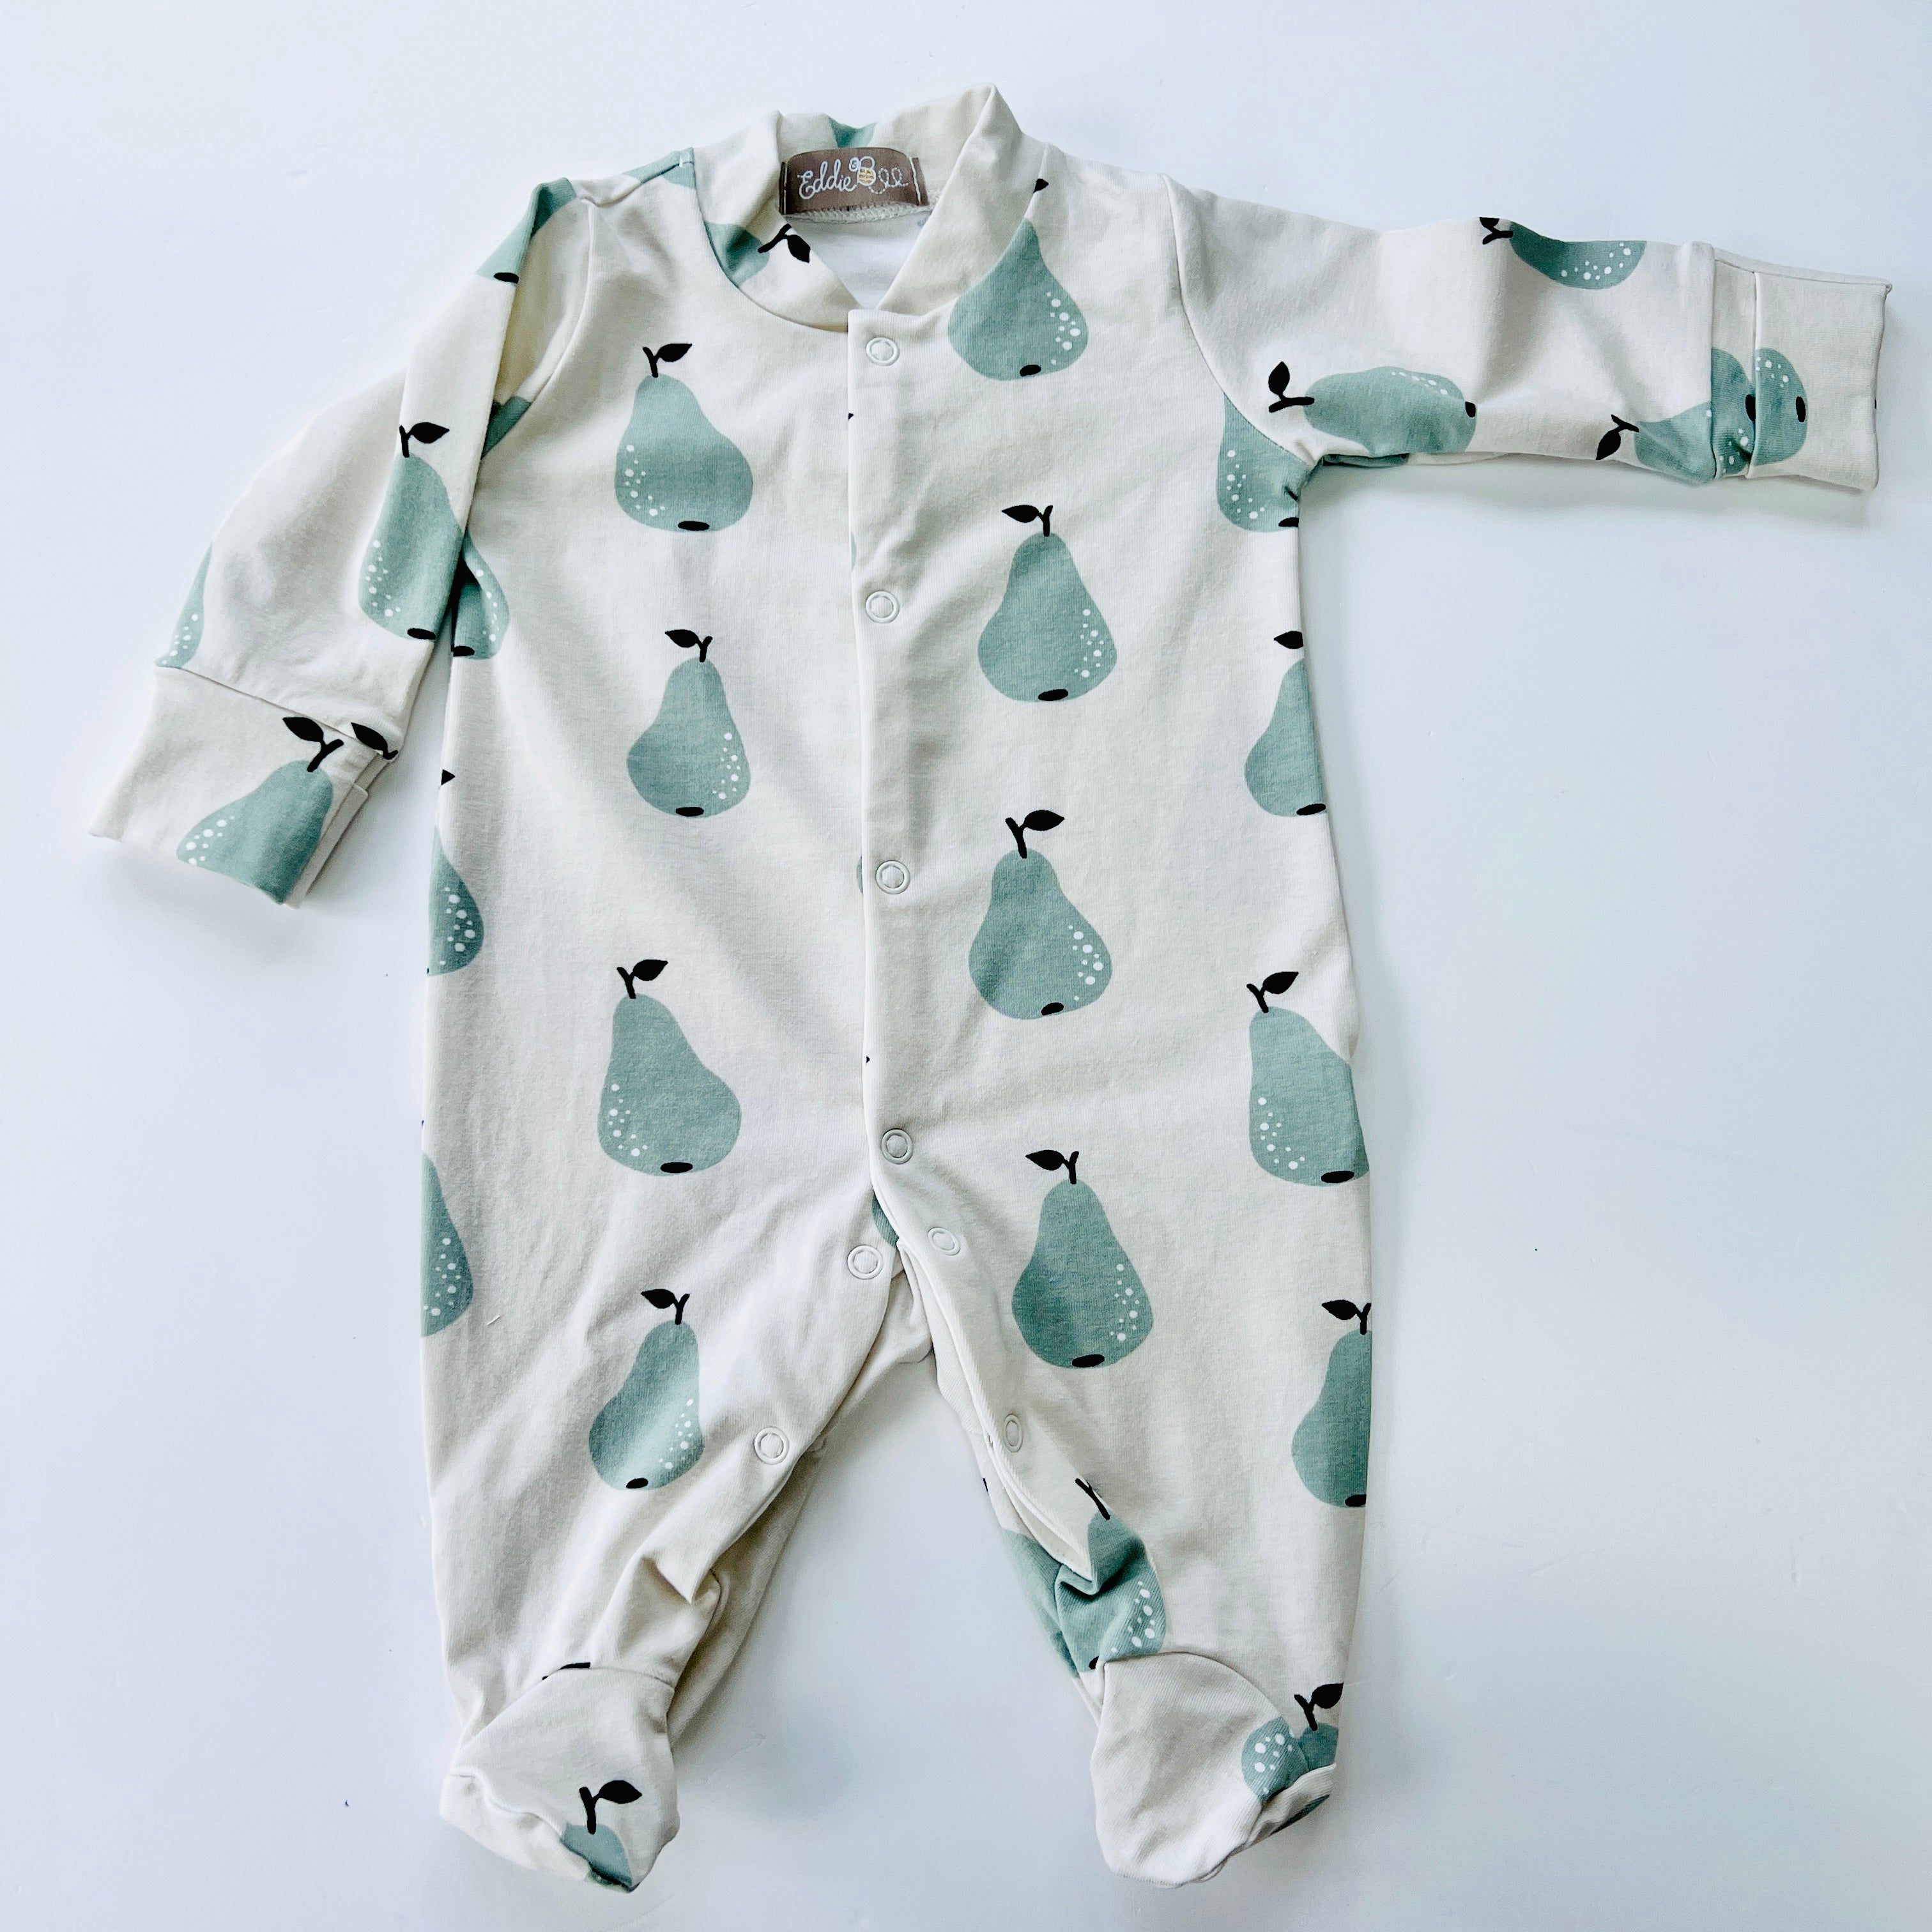 Eddie & Bee organic cotton Baby sleepsuit  in Oat" Pear" print.